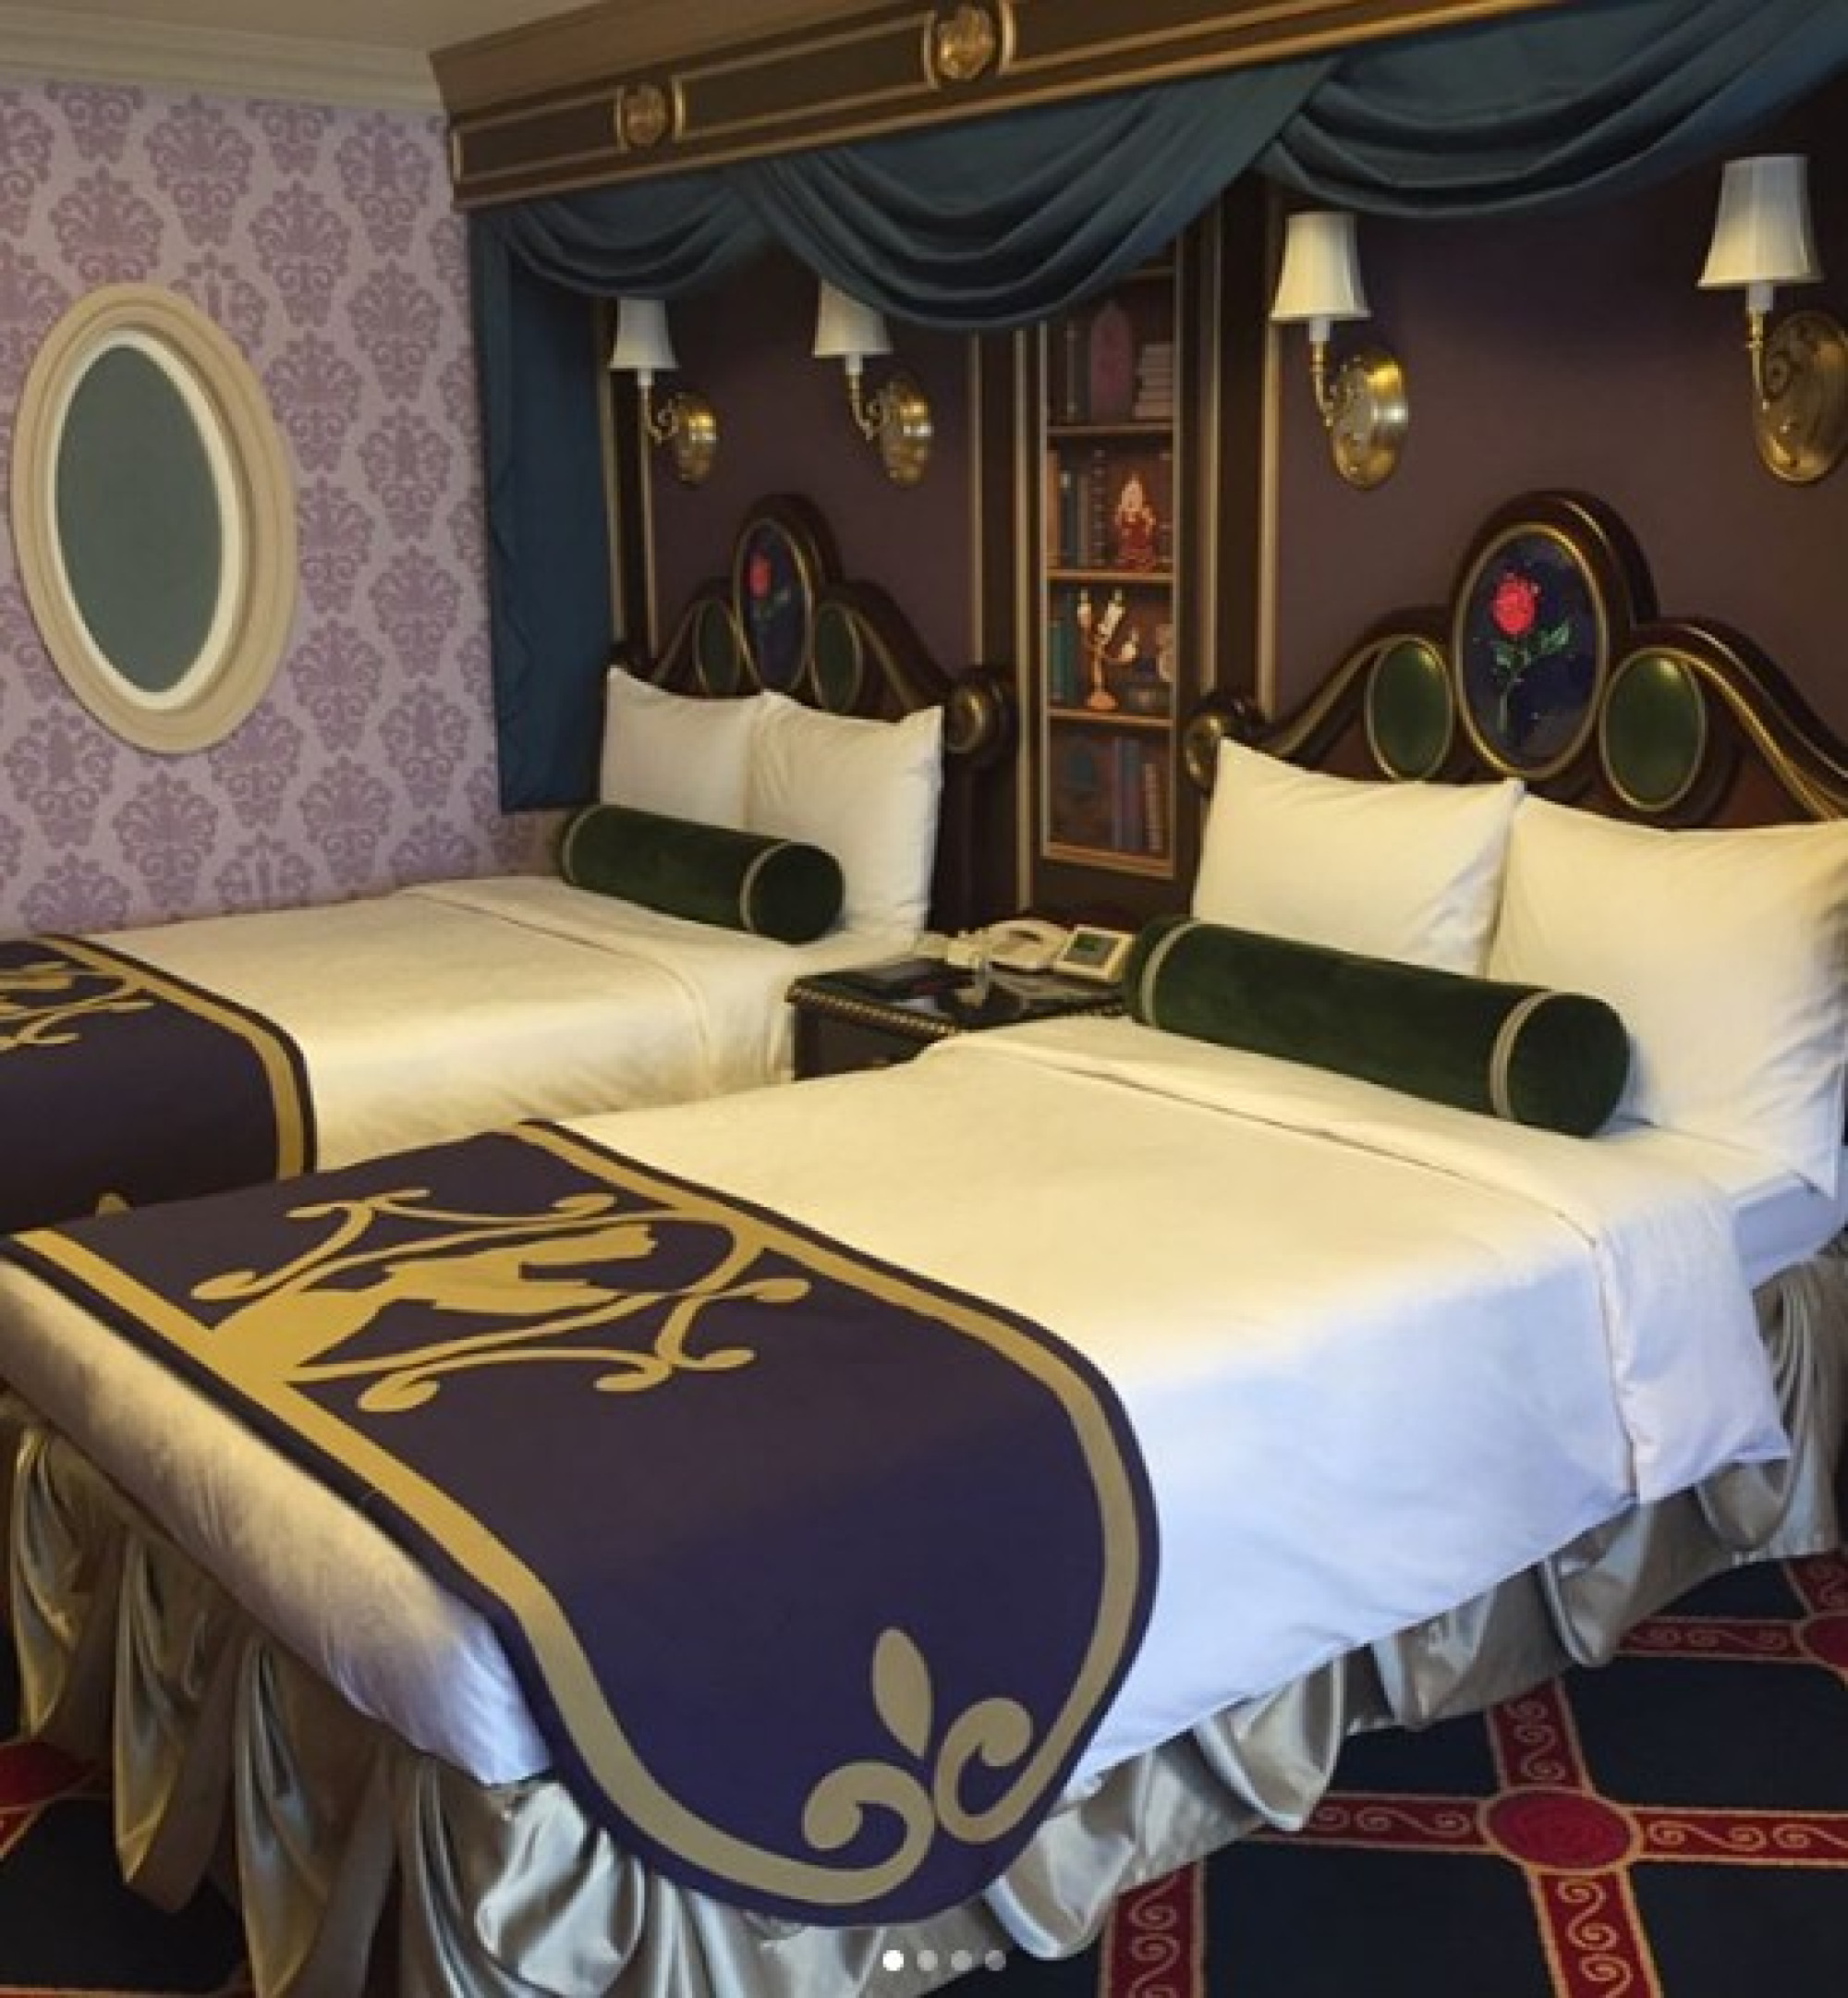 大人気のキャラクタールームもリーズナブルに泊まれるかも キャステル Castel ディズニー情報